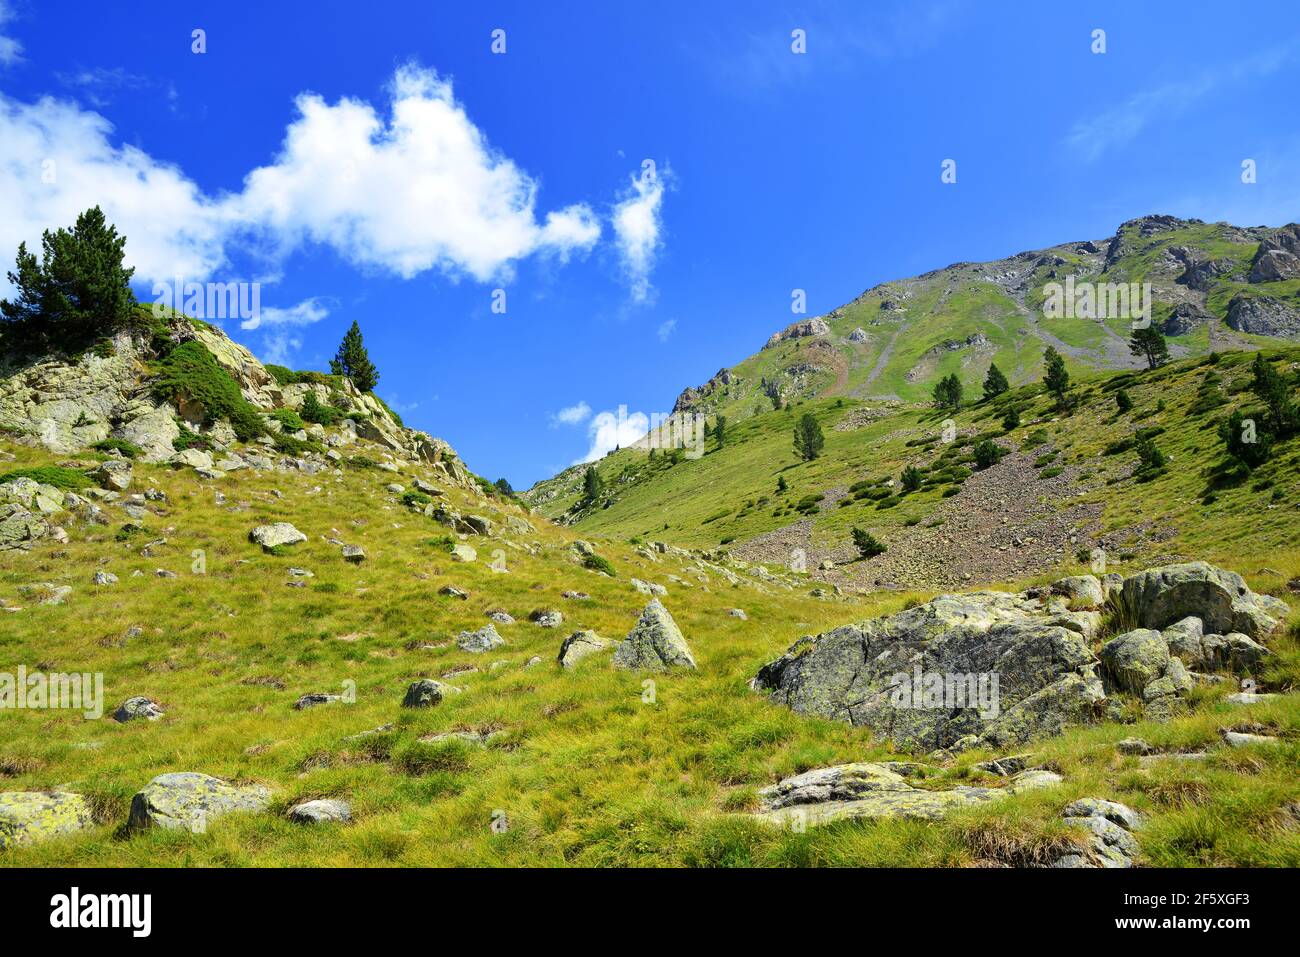 Splendido paesaggio montano nella riserva naturale nazionale di Neouvielle, Pirenei francesi. Foto Stock